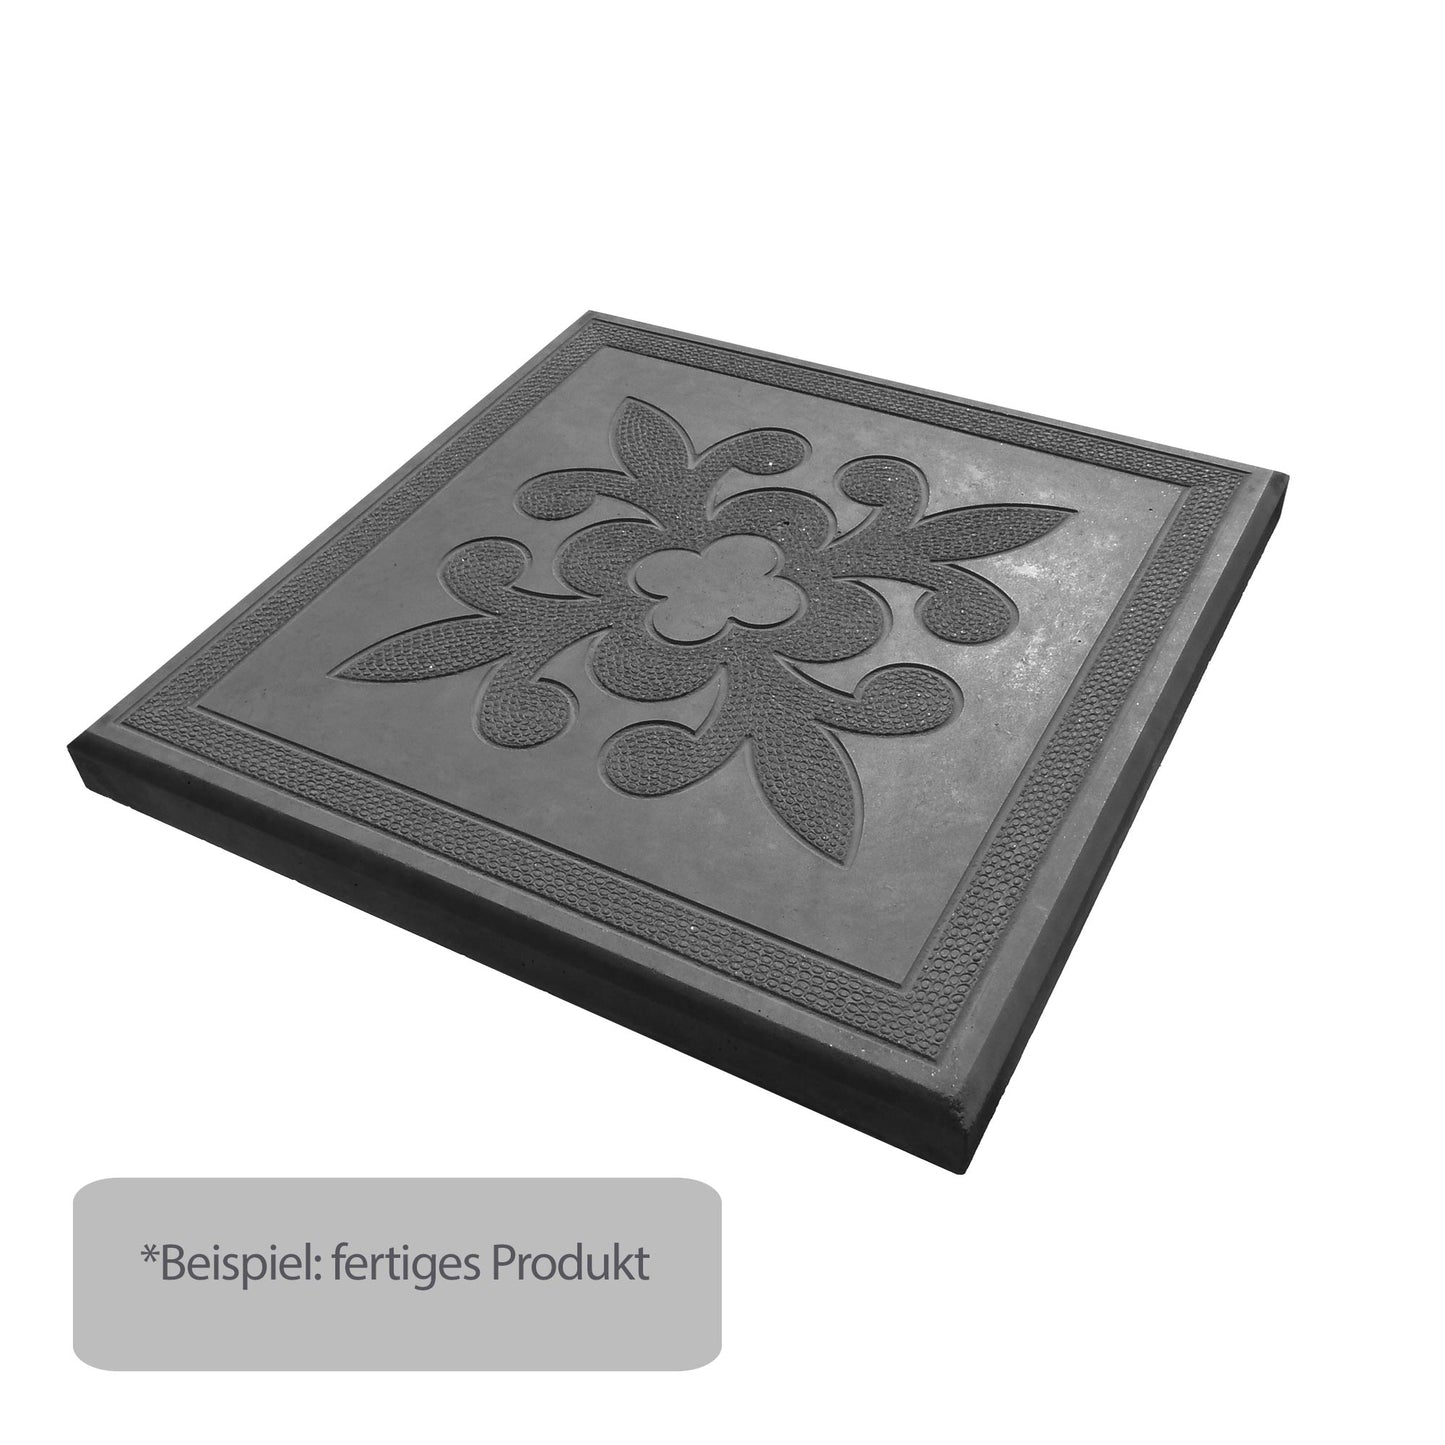 Schwarzpigment für Beton / Zement / Gips - 25kg Sack - Farbstein